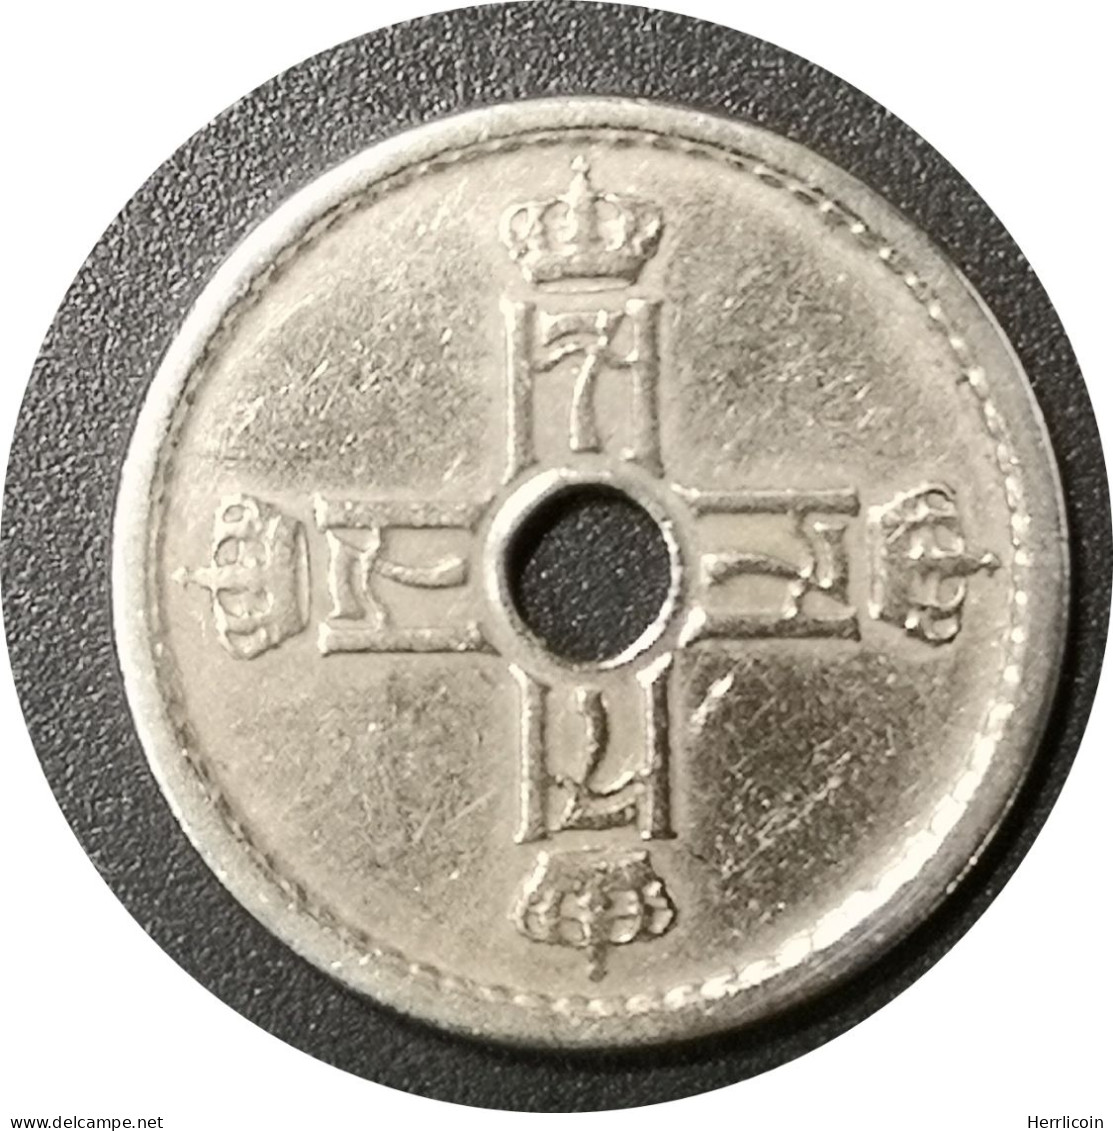 Monnaie Norvège - 1939 - 25 øre - Haakon VII - Norvegia